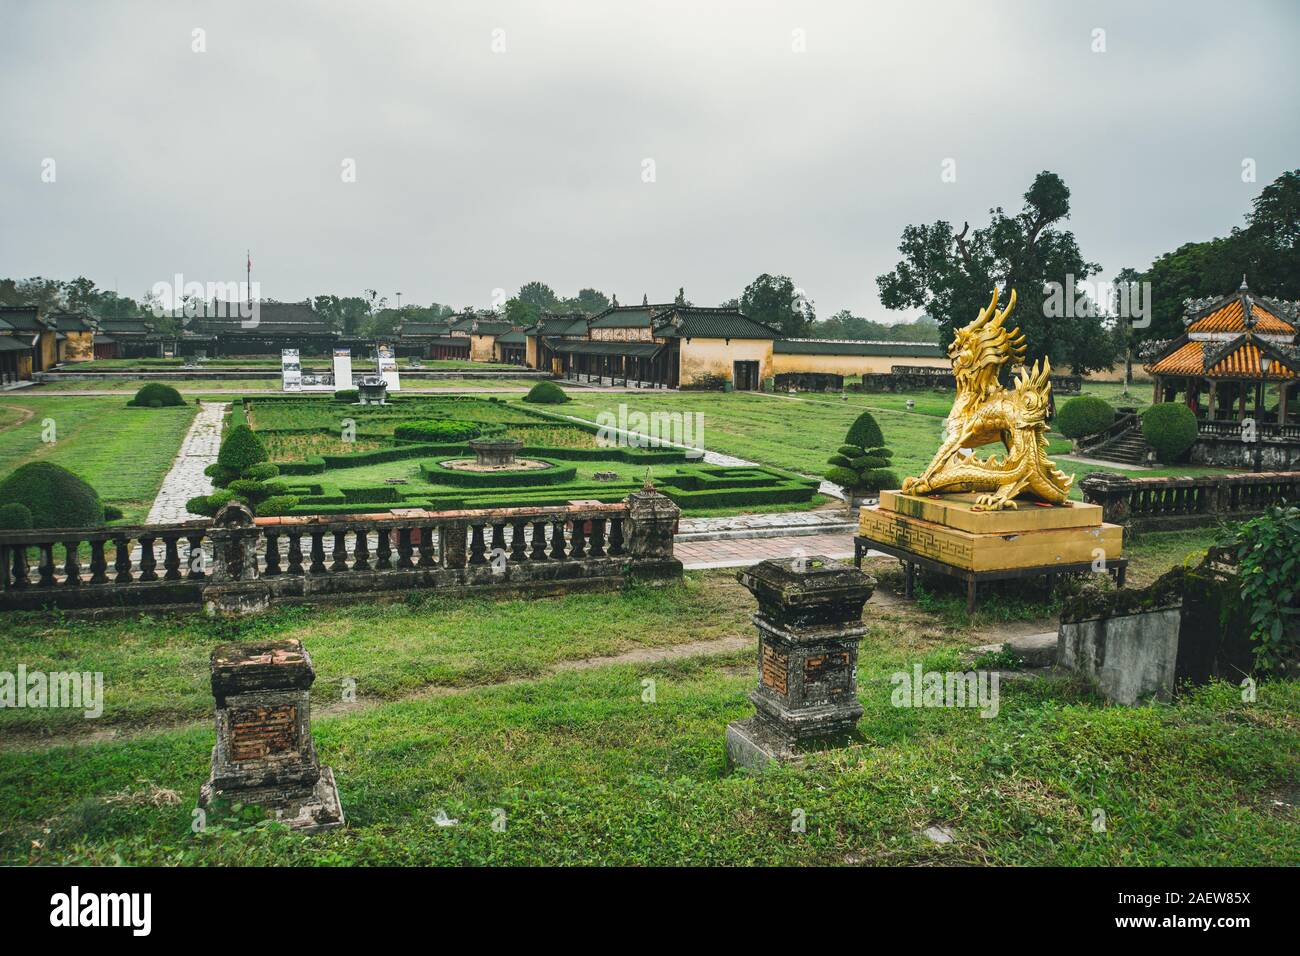 La Citadelle impériale de Hue - Vietnam - Asie du sud-est. Banque D'Images